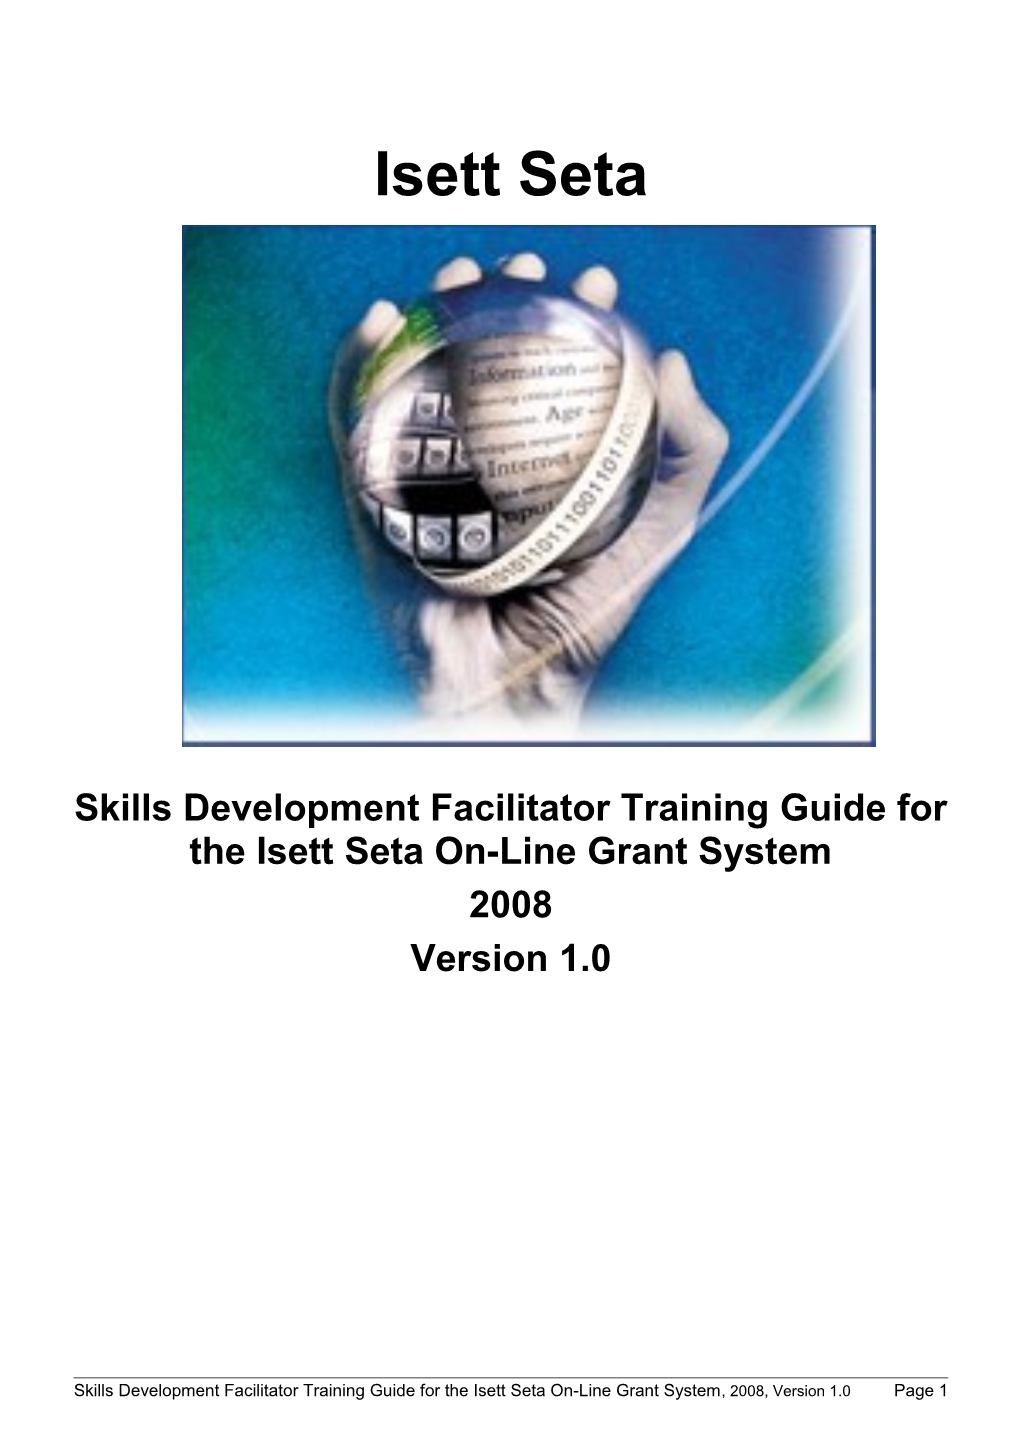 Skills Development Facilitator Training Guide for the Isett Seta On-Line Grant System